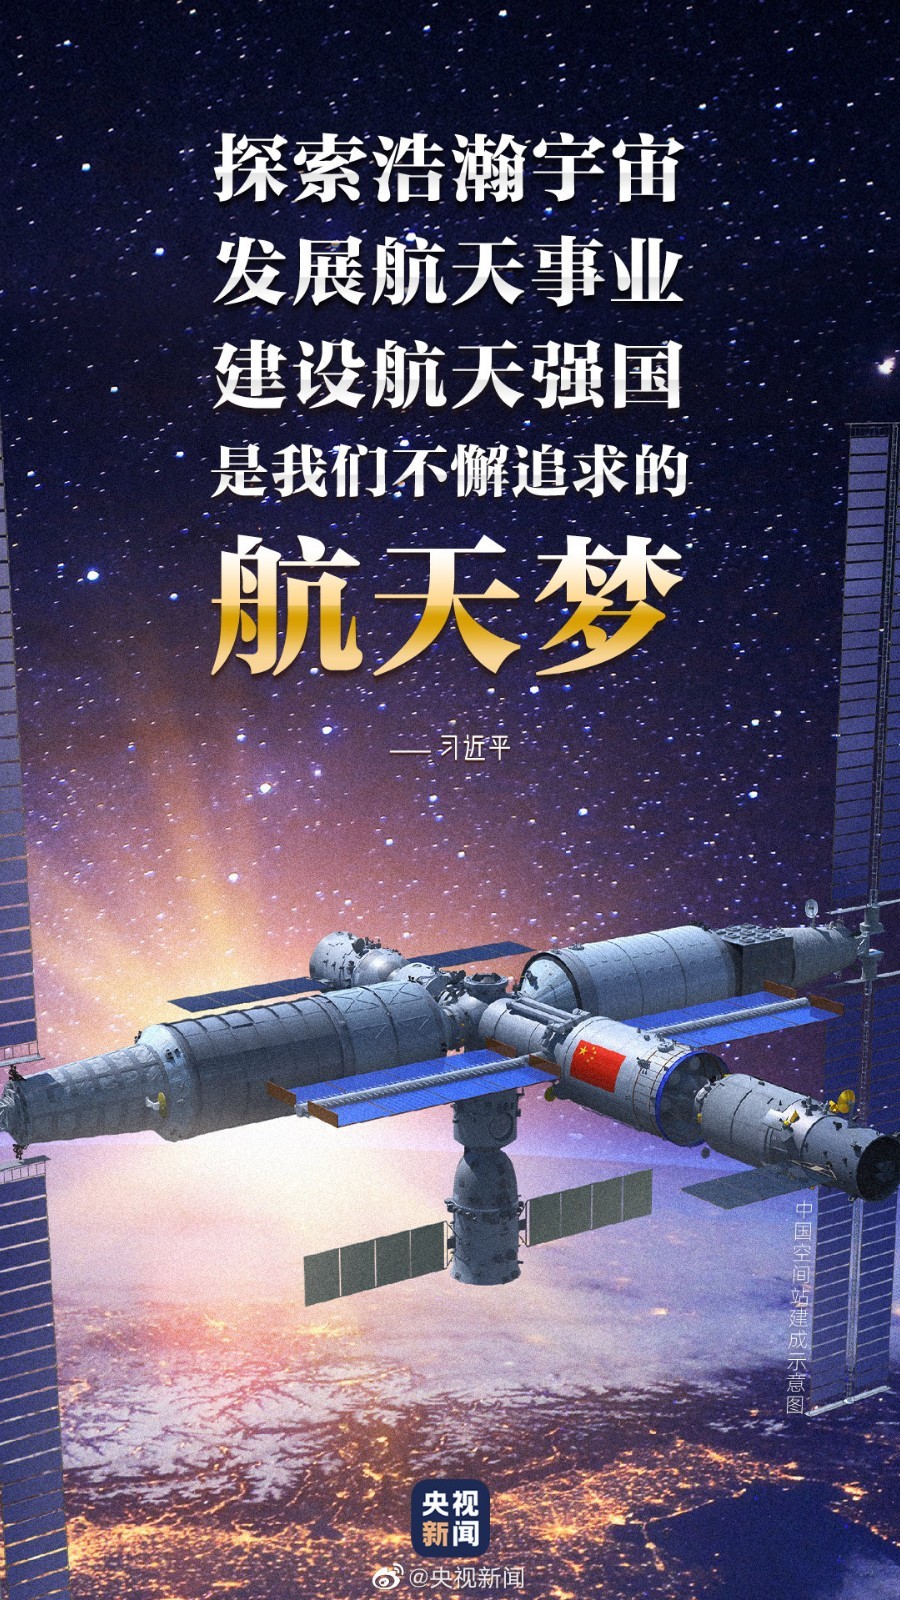 2分钟看中国航天全记录:朝着星辰大海,奋勇前行!